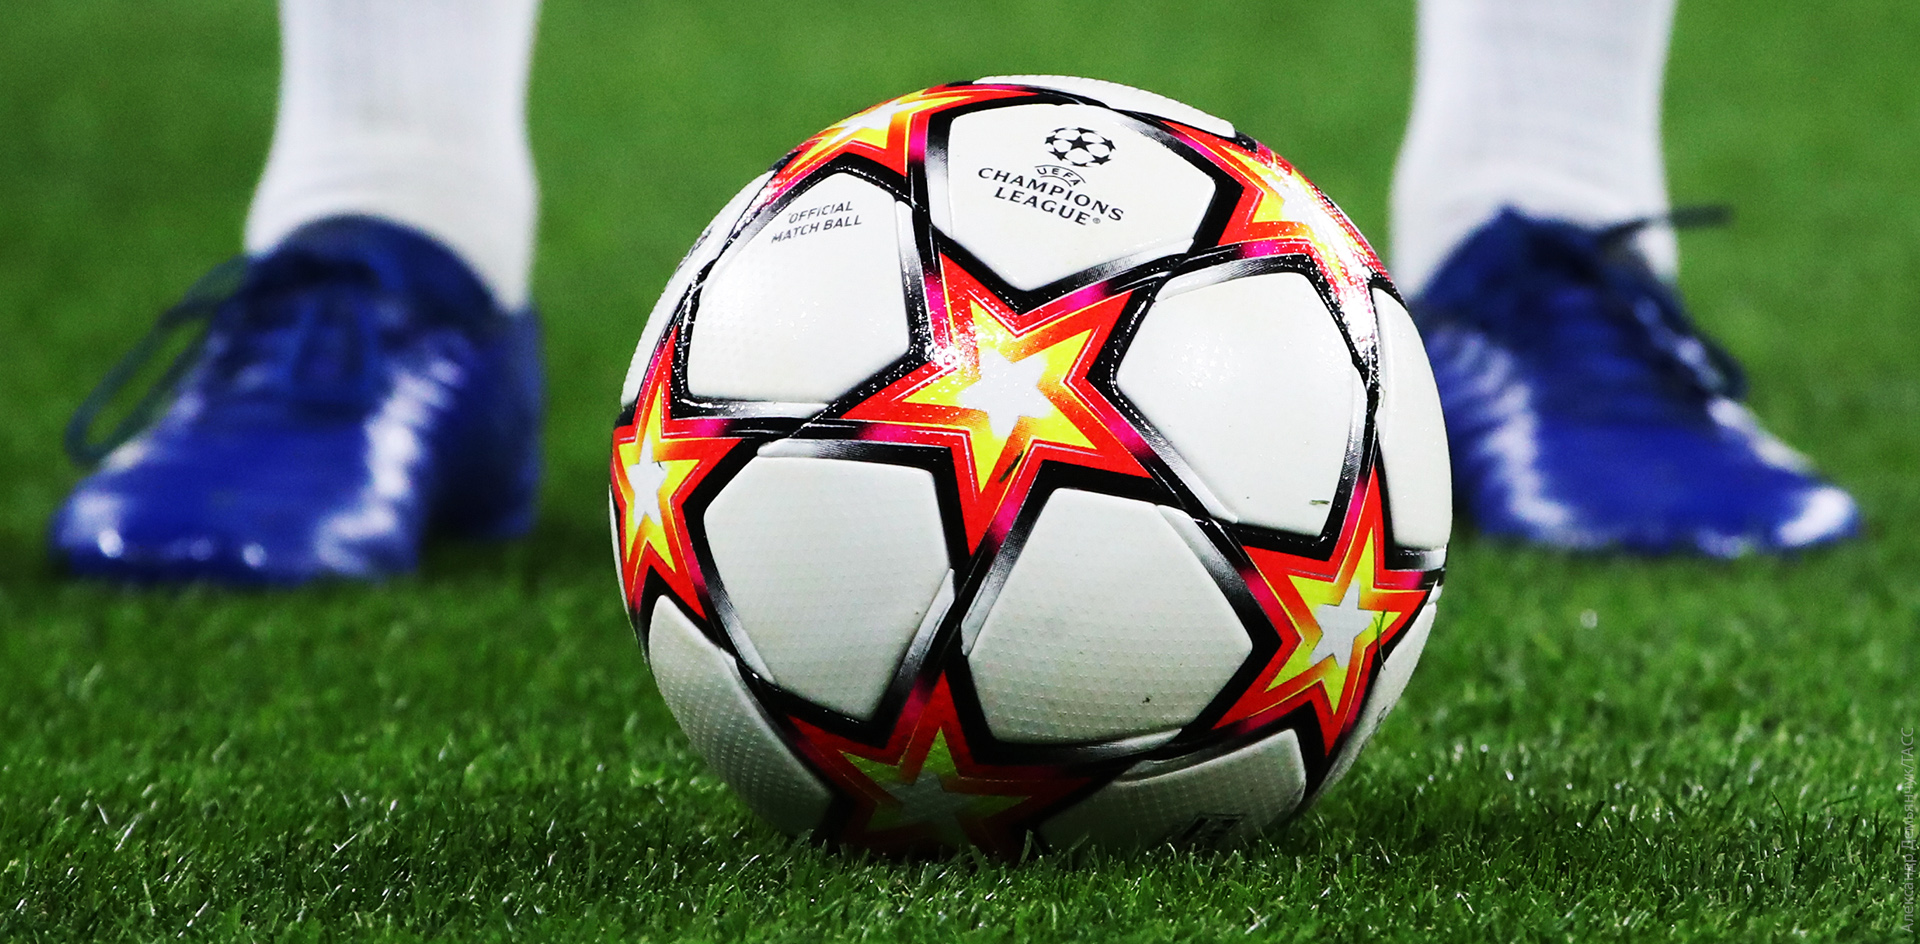 УЕФА перенёс финал Лиги чемпионов из Санкт-Петербурга в Париж